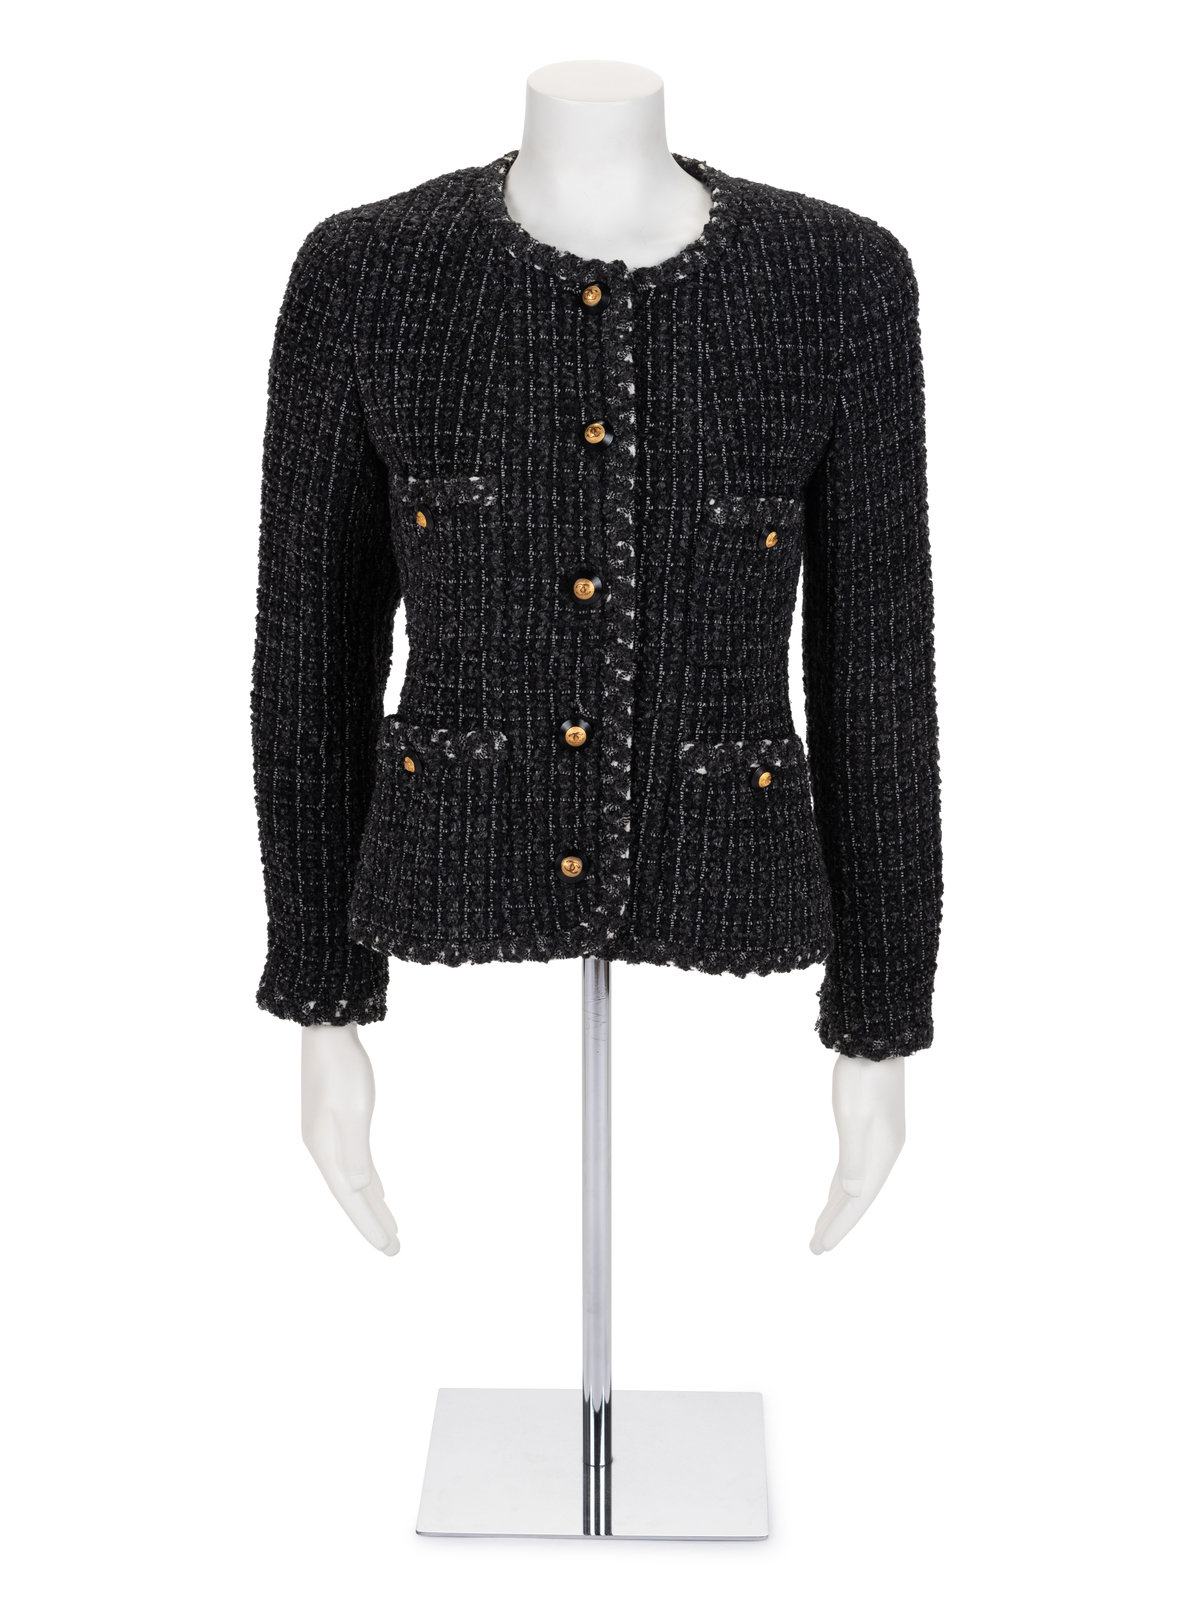 Chanel Tweed Jacket, Fall 1993